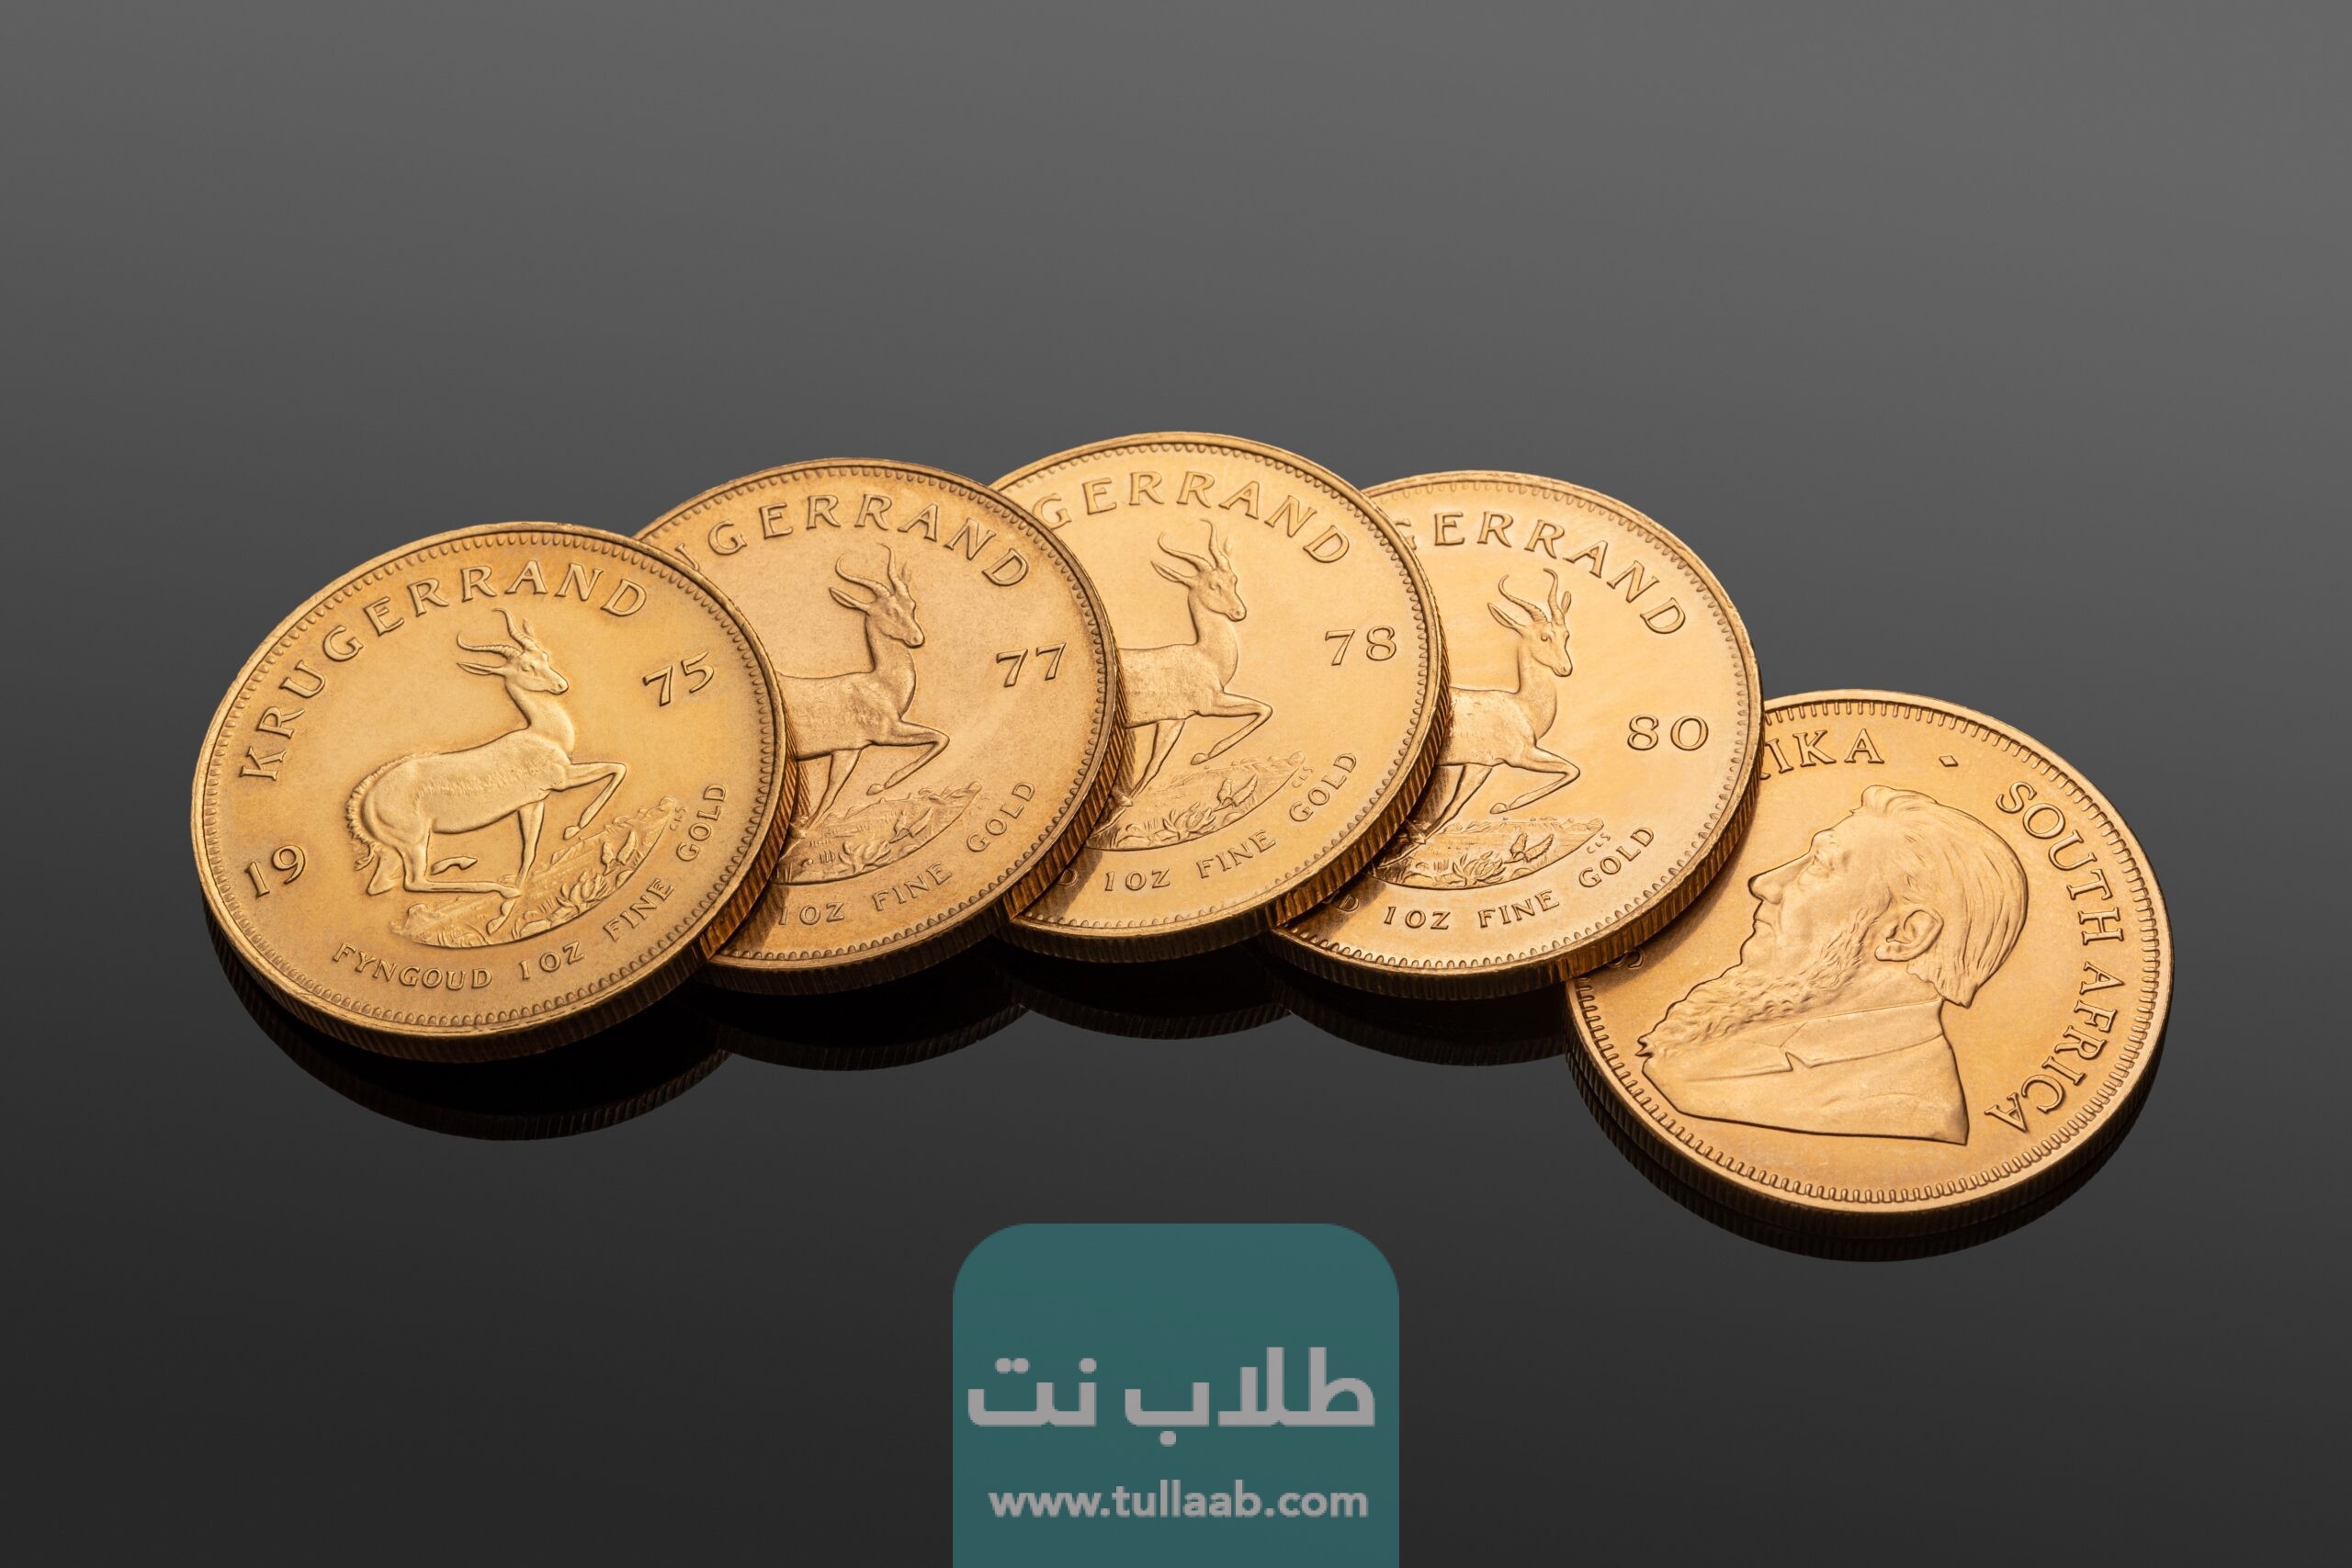 سعر الجنية الذهب اليوم في الإمارات